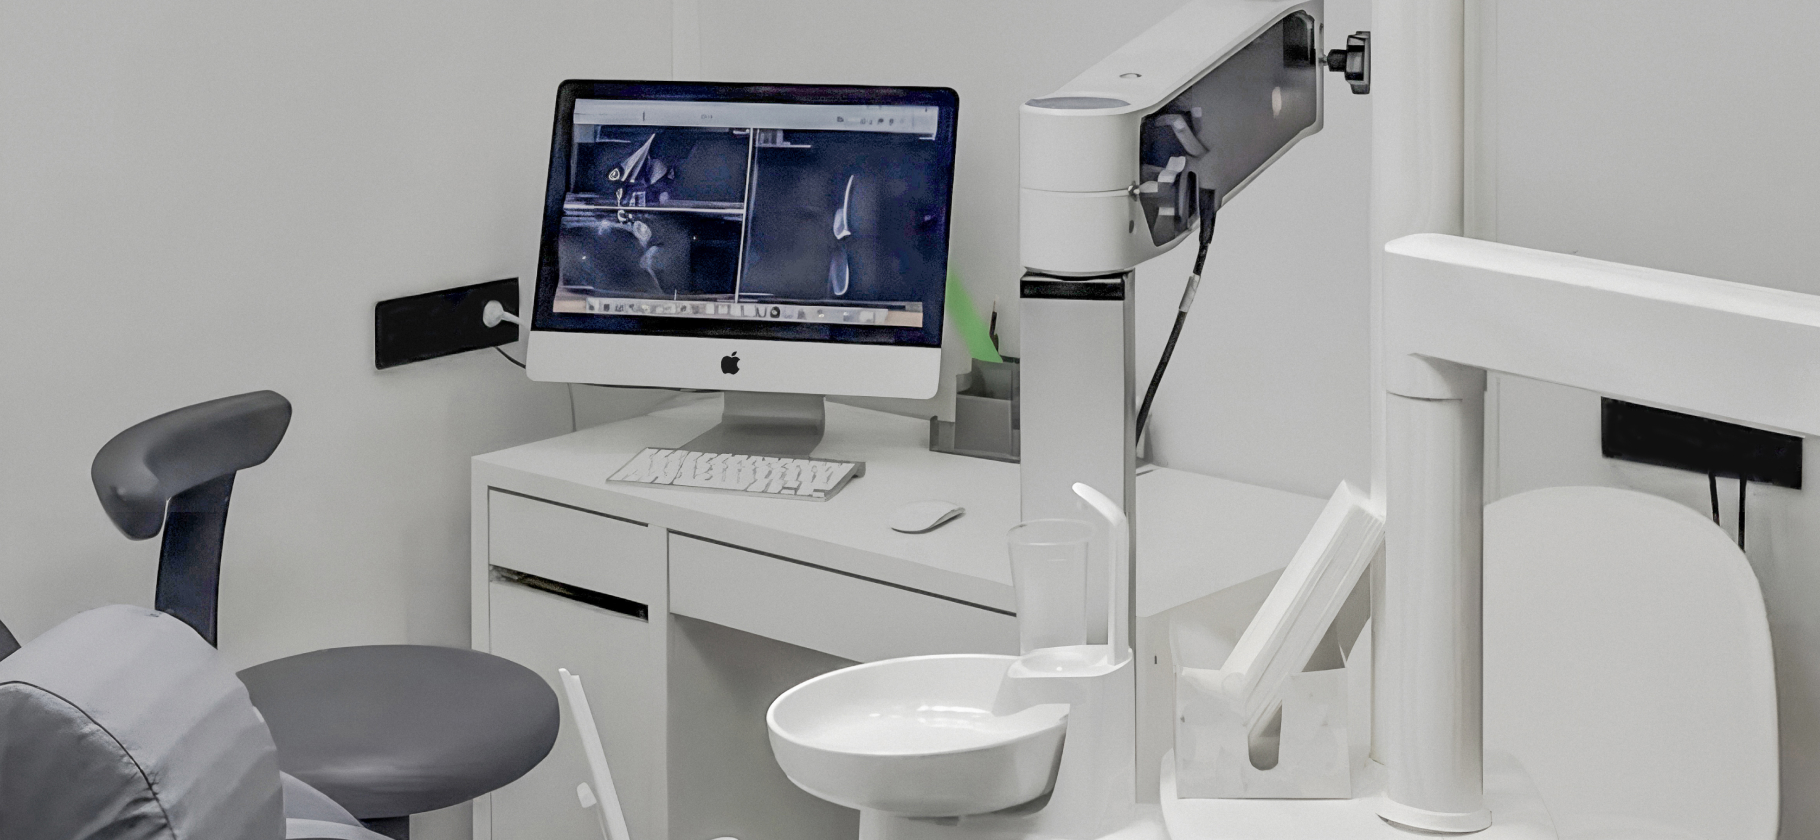 Рабочее место: кабинет стоматолога с немецкими микроскопами, 3D-сканером и Аймаком